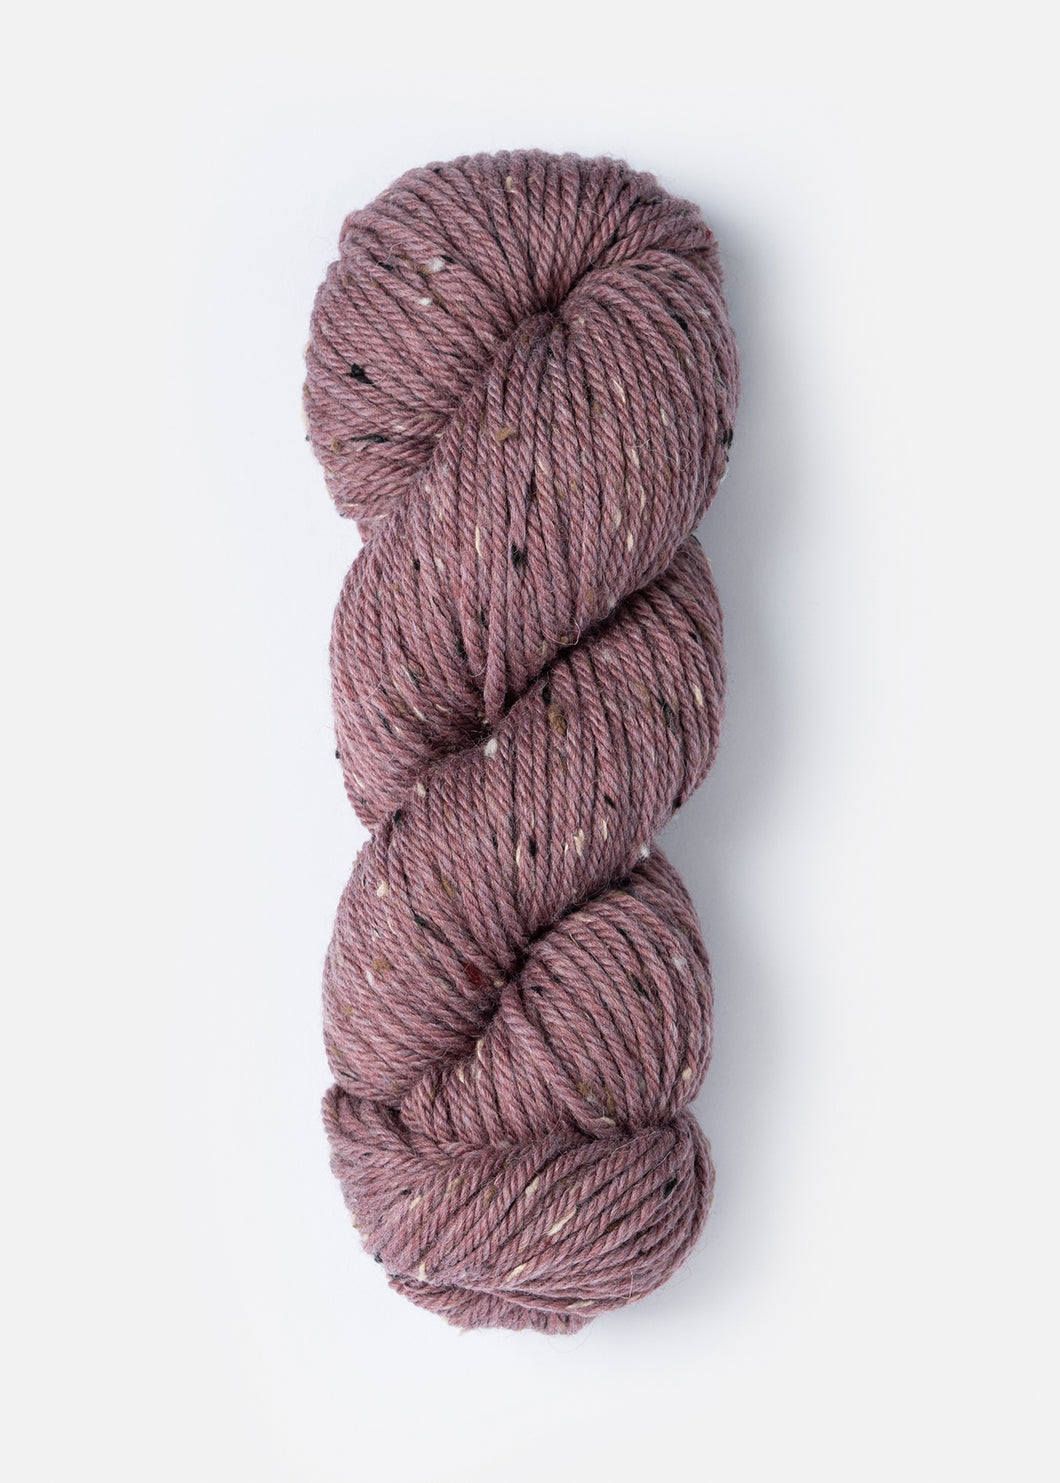 Blue Sky Fibers Woolstok Tweed - Sage Rose